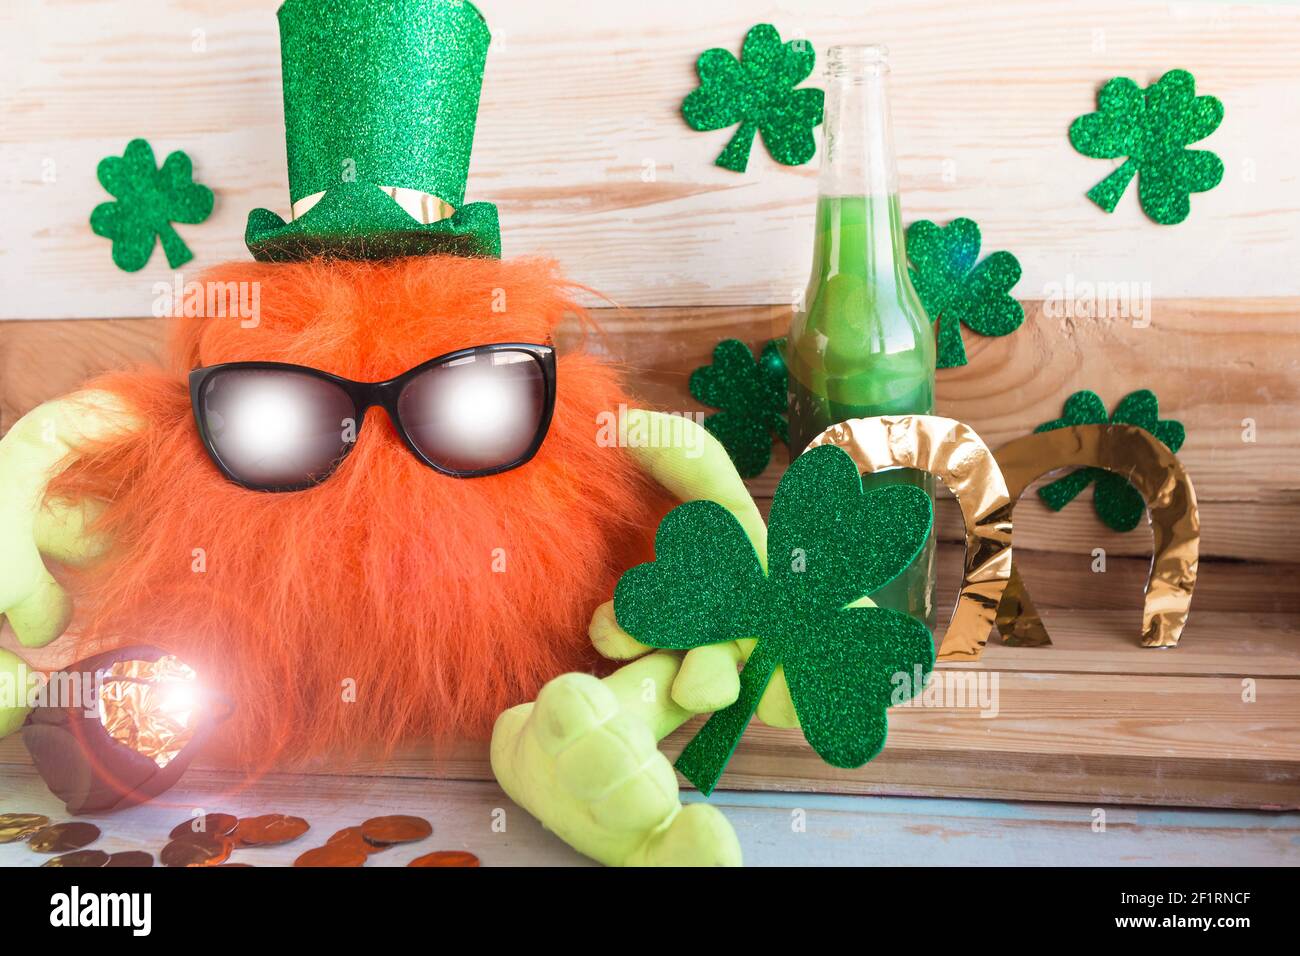 Il leprechaun giocattolo con la barba di zenzero in cappello verde e gli occhiali da sole tiene uno shamrock nelle sue mani. Il concetto di celebrazione del giorno di San Patrizio Foto Stock